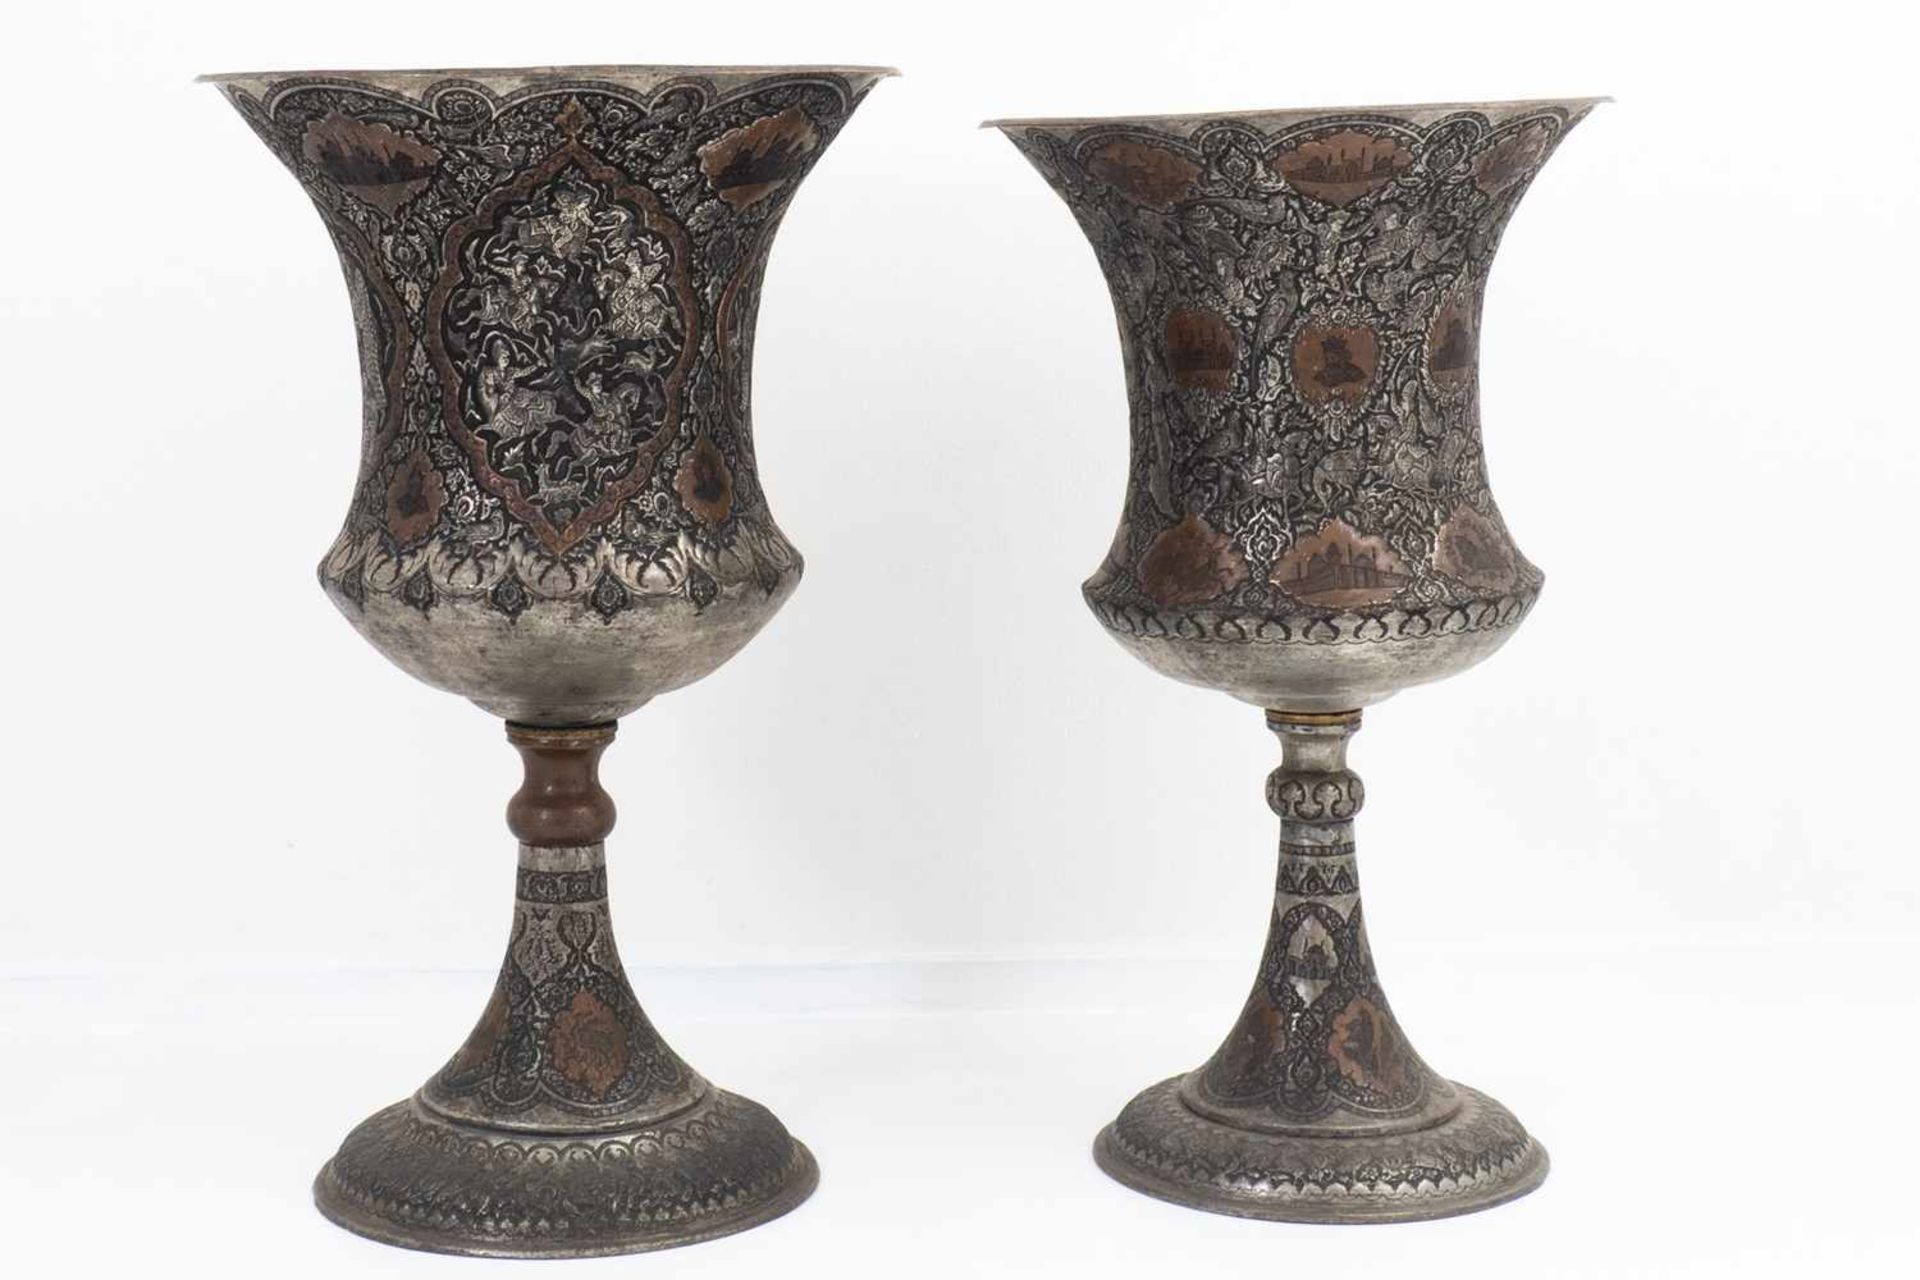 Pair of ornate amphorae vases